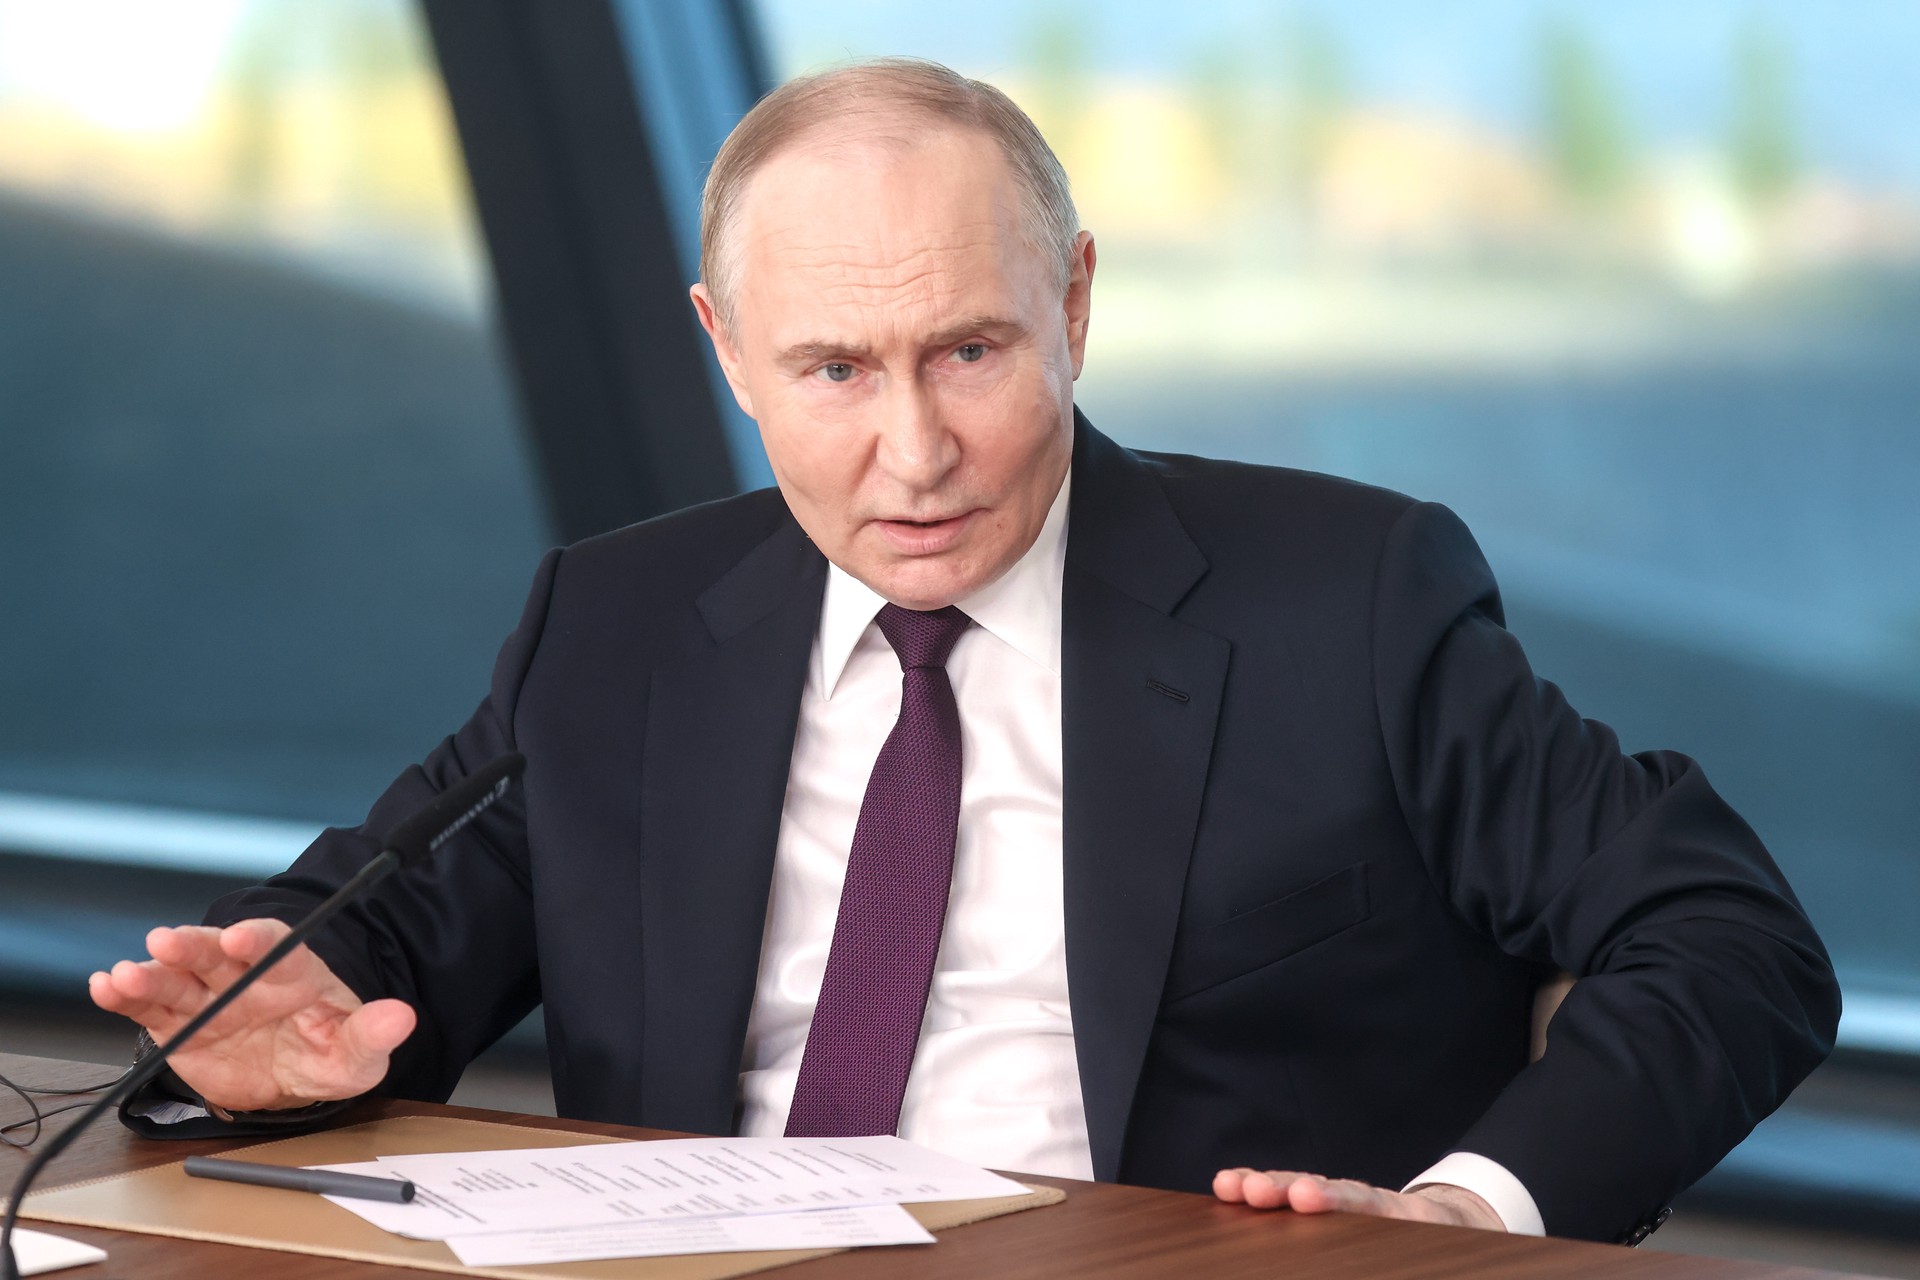 Дрожь по делу: что привлекло внимание западных СМИ во вчерашних словах Путина